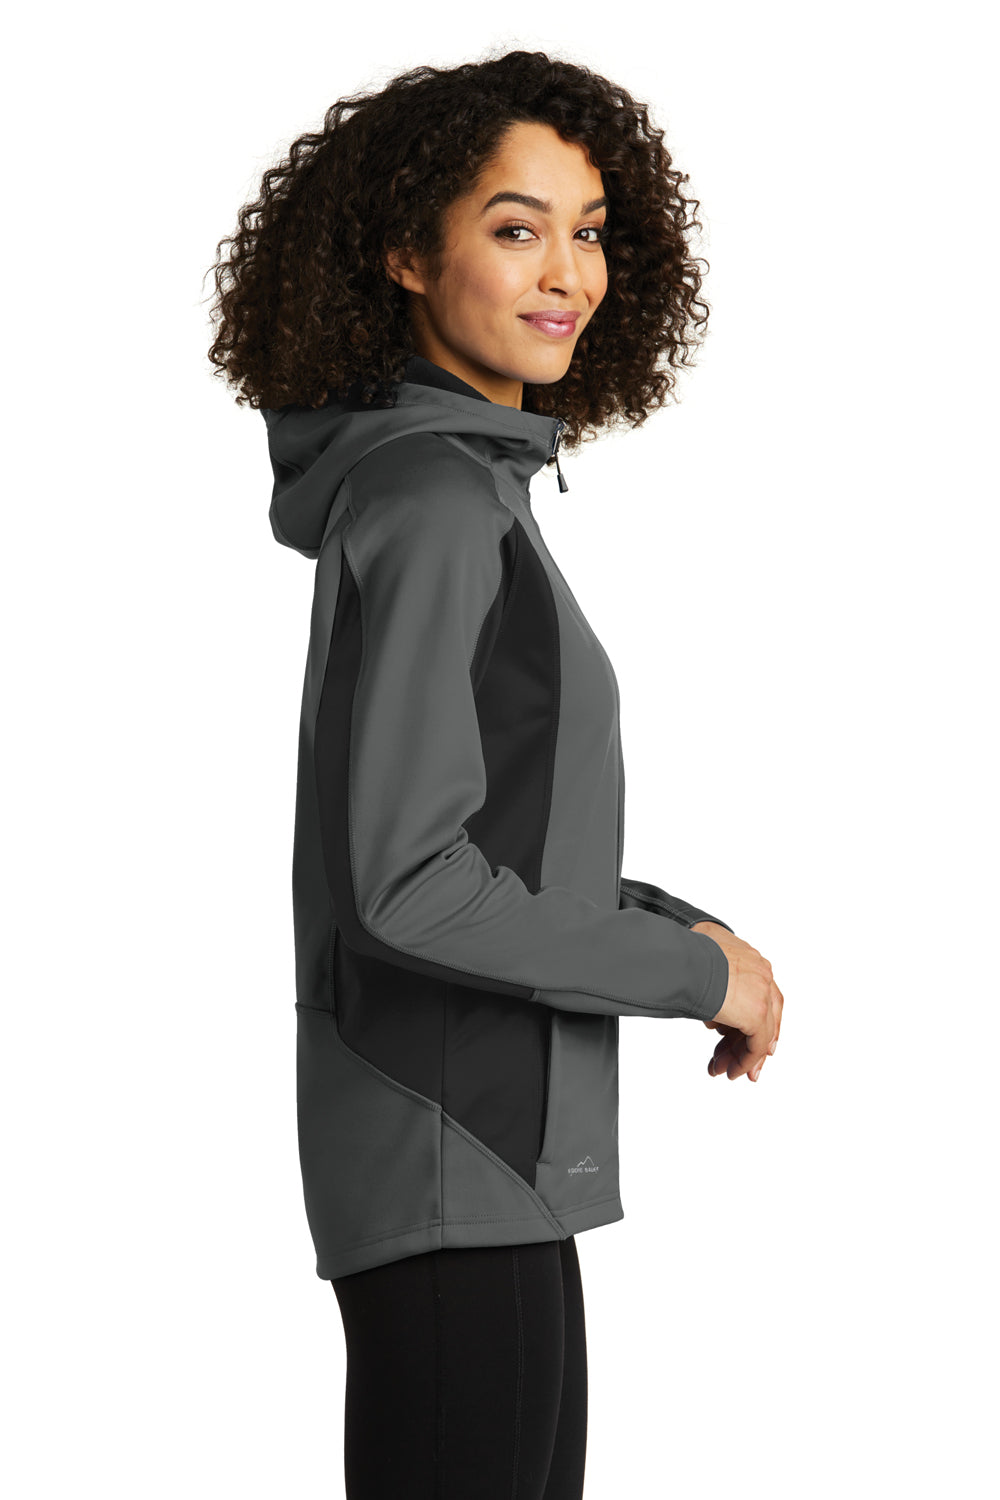 Eddie Bauer EB543 Womens Trail Water Resistant Full Zip Hooded Jacket Metal Grey Model Side